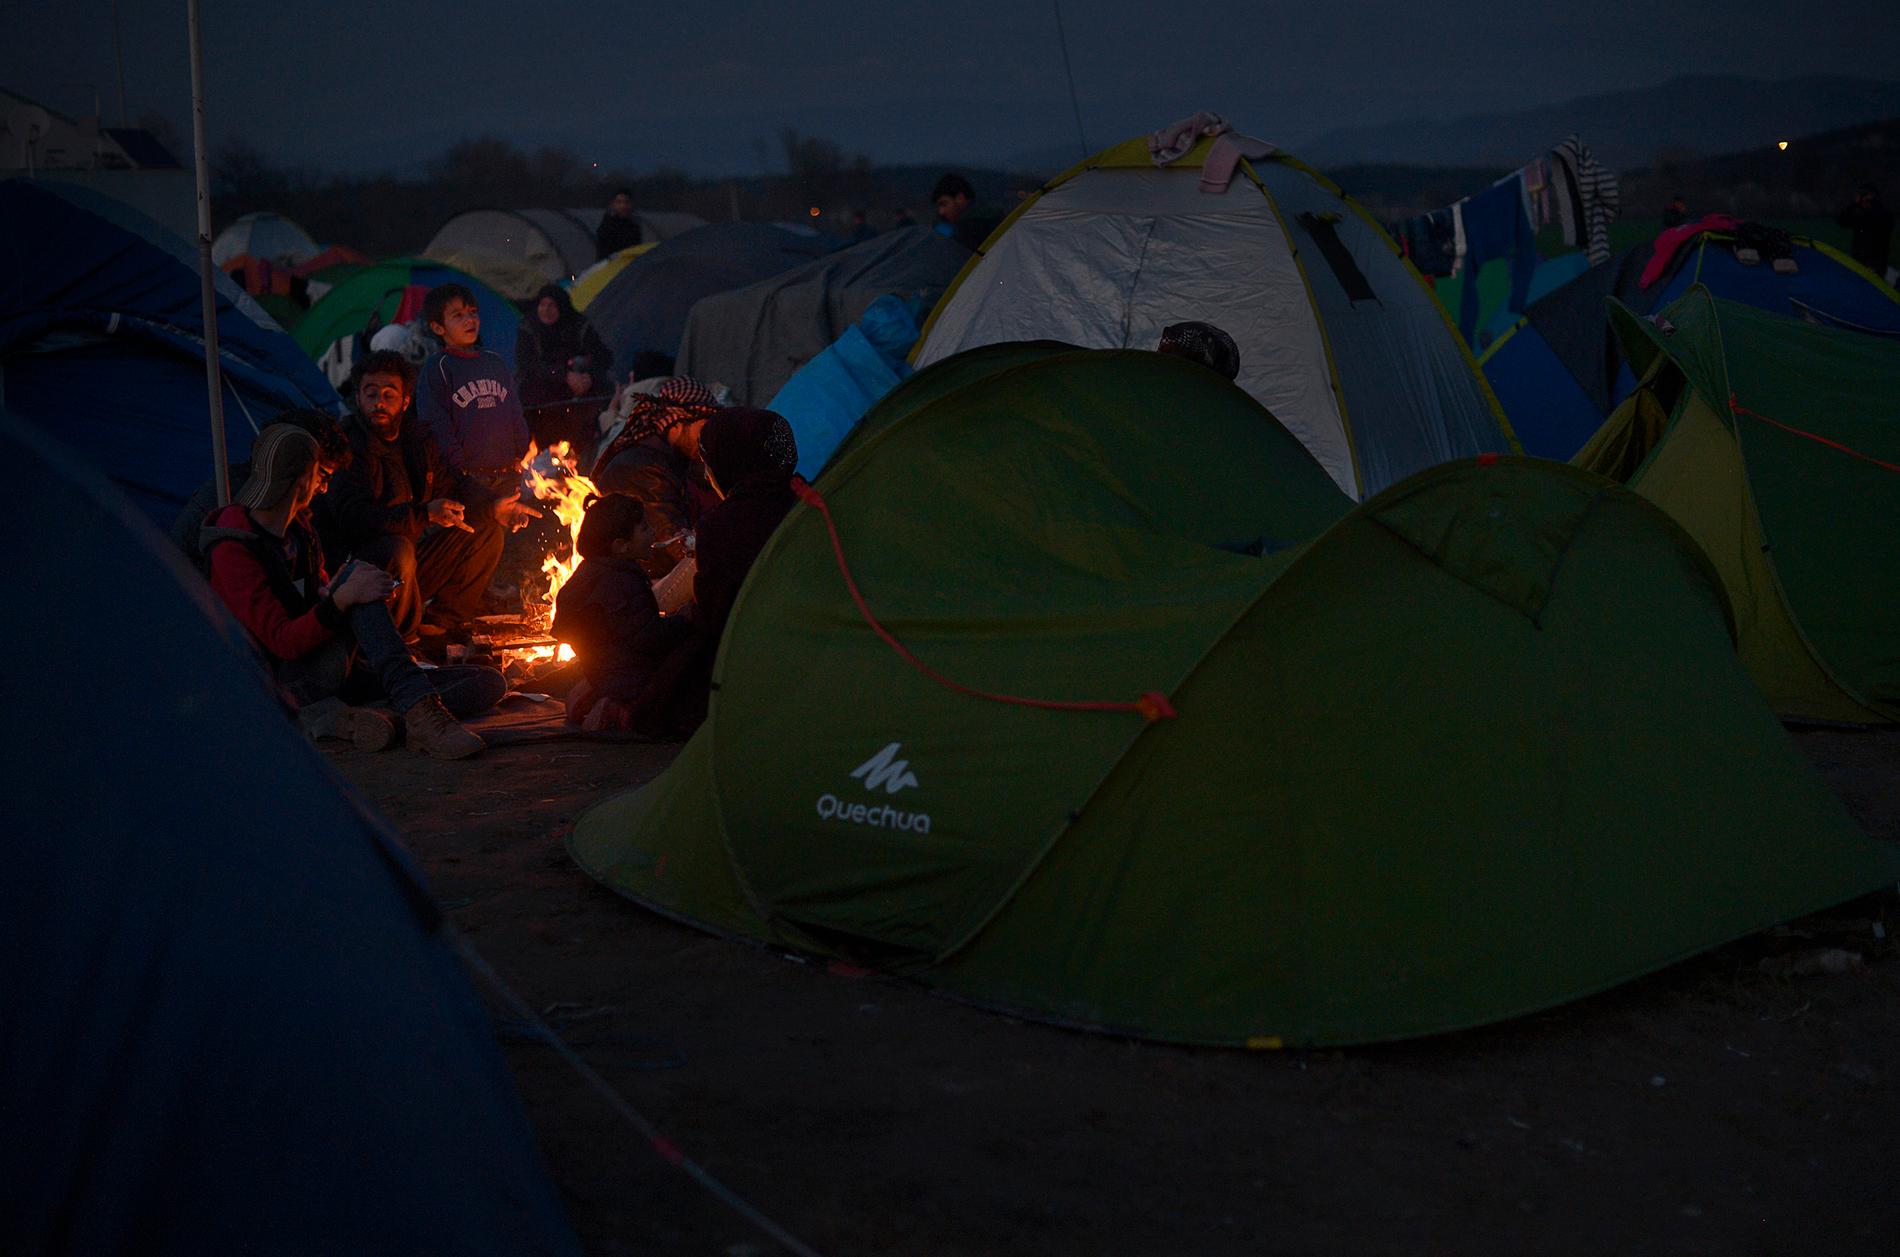 Det är dags att gå och lägga sig i flyktinglägret vid gränsen mellan Grekland och Makedonien. Efter att solen försvunnit bakom bergen tar det bara en halv timme till det att det är helt mörkt i lägret. Man släpar sina nyinköpta tält och sätter upp dem på någon av åkrarna vid gränsen. Man eldar kvistar, grenar och skräp för att hålla värmen.